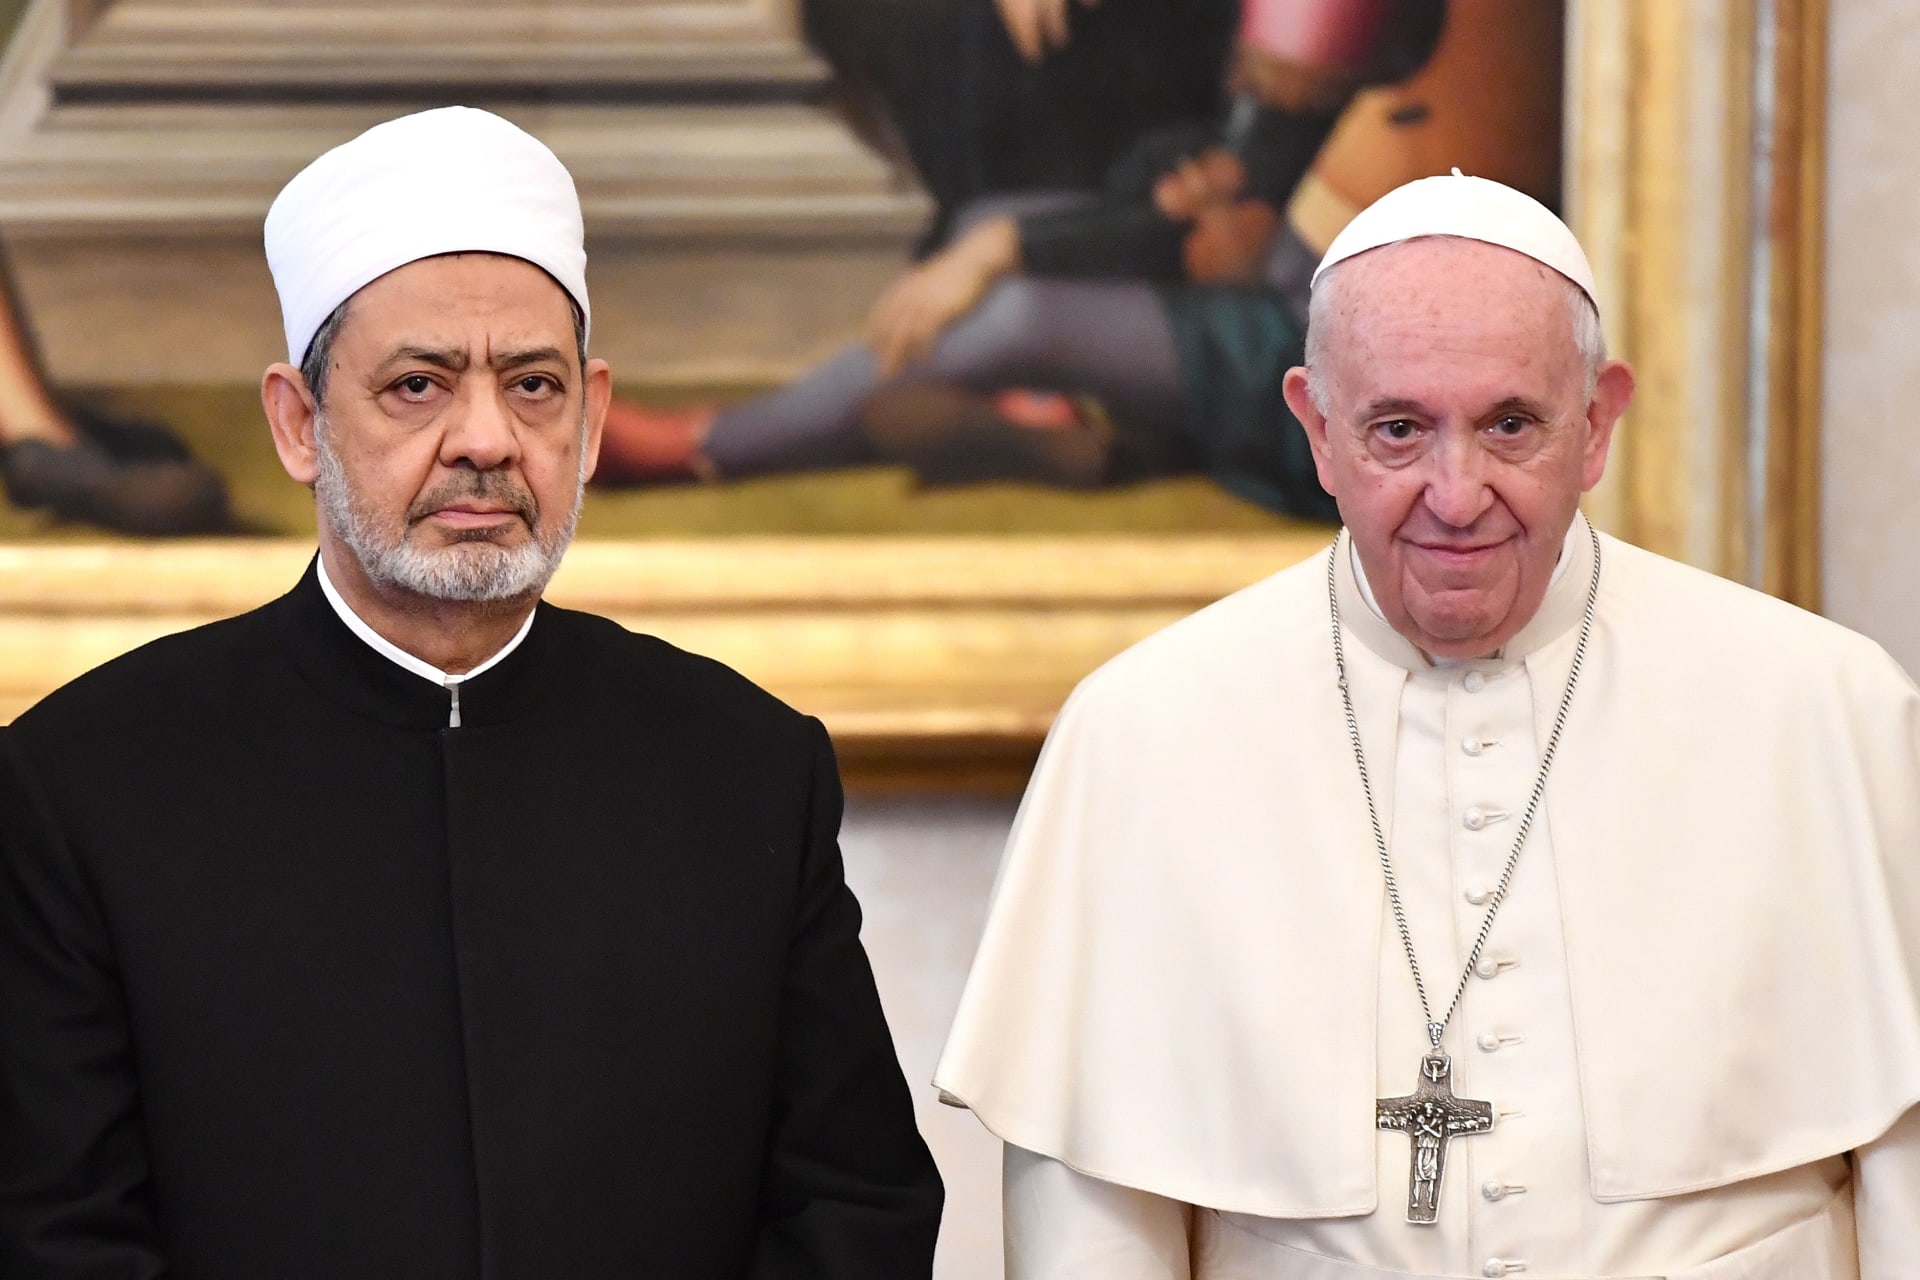 البحرين: البابا فرنسيس وشيخ الأزهر يزوران البلاد في نوفمبر بناء على دعوة من الملك